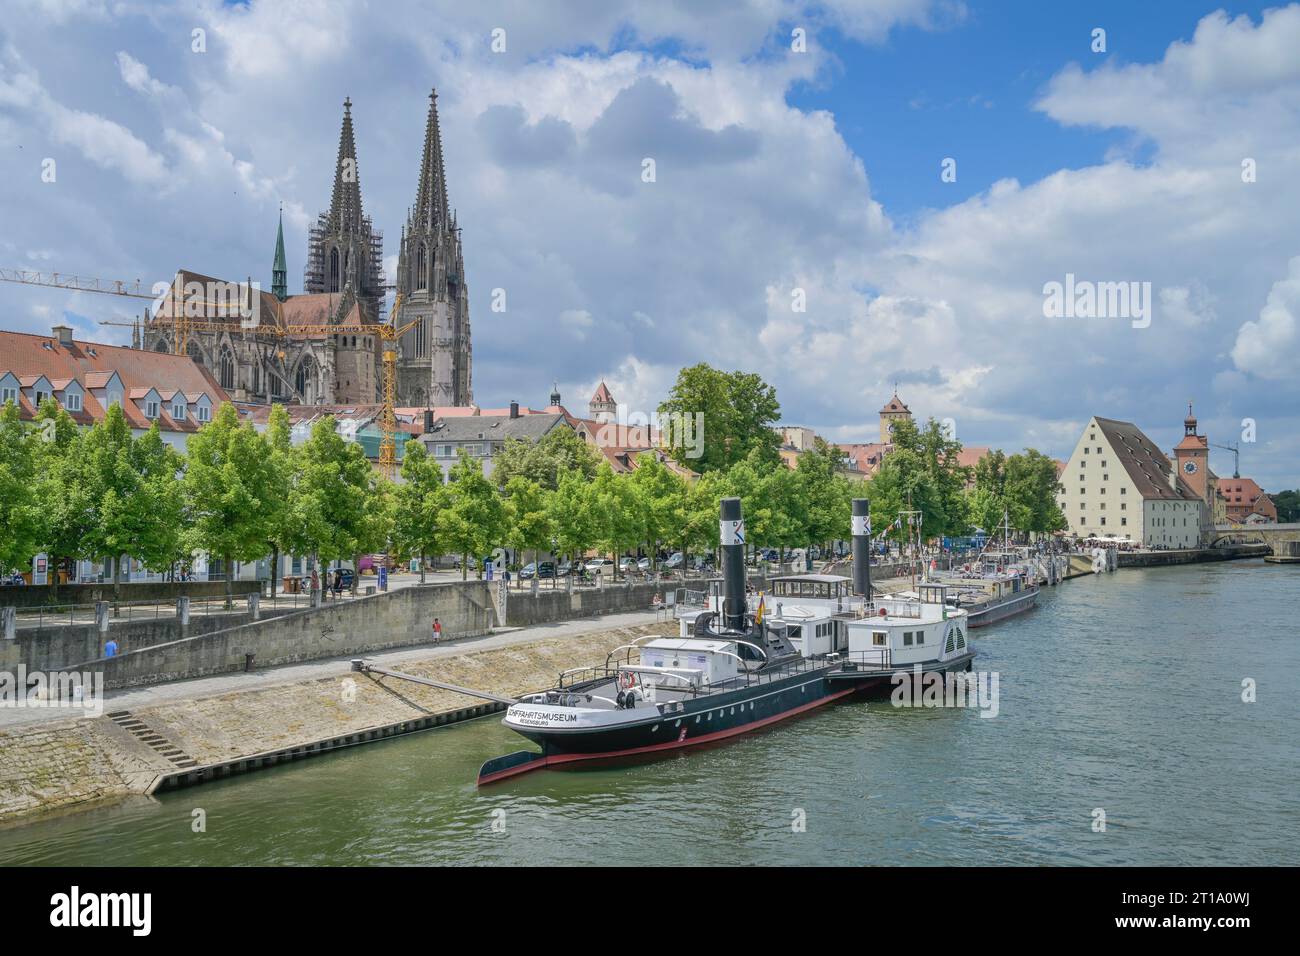 Stadtpanorama, Donau, Regensburg, Bayern, Deutschland Foto Stock